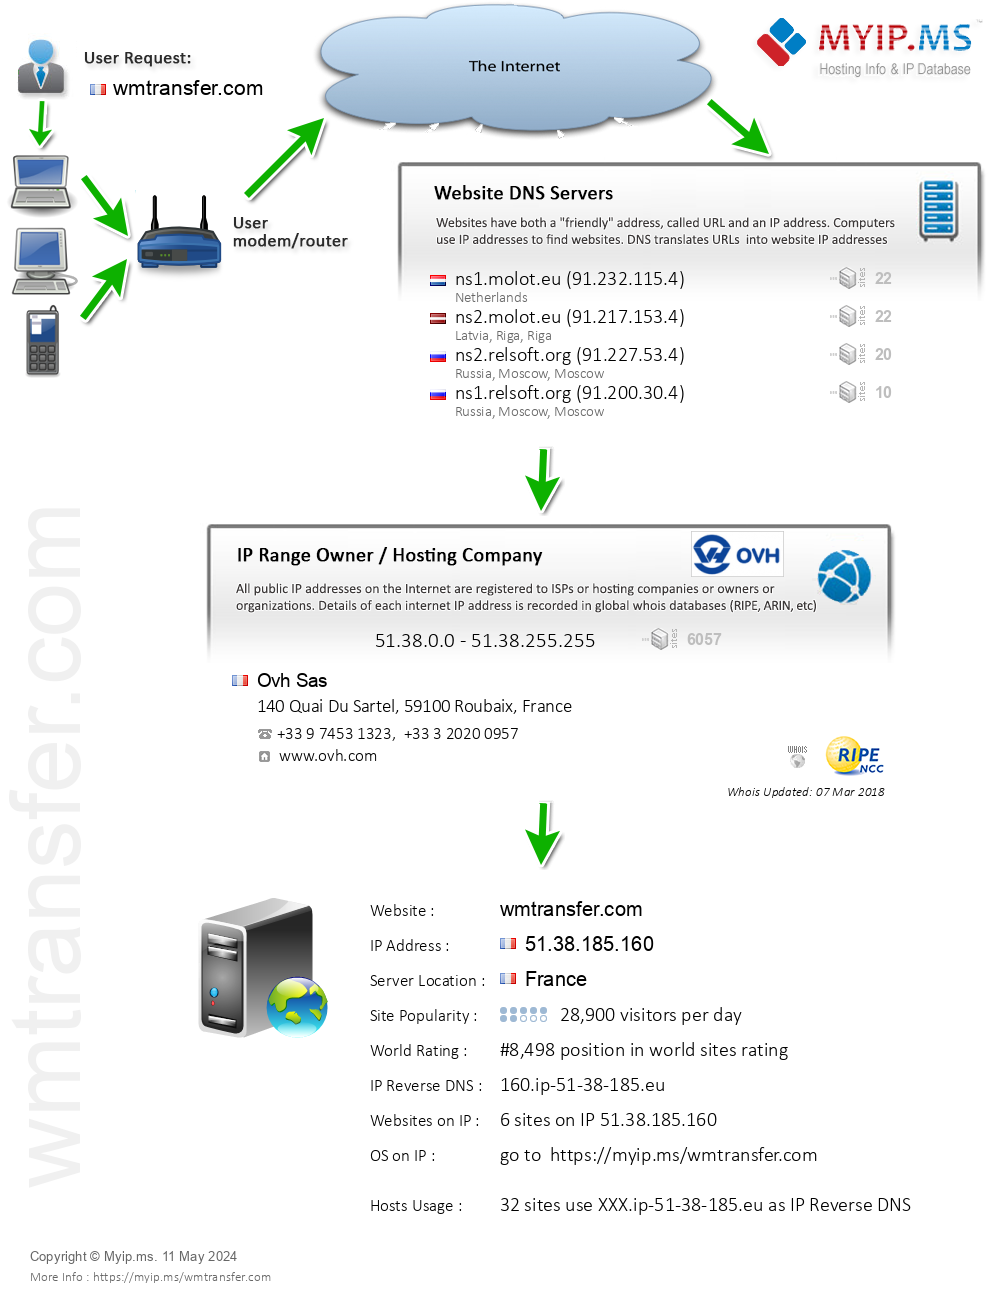 Wmtransfer.com - Website Hosting Visual IP Diagram